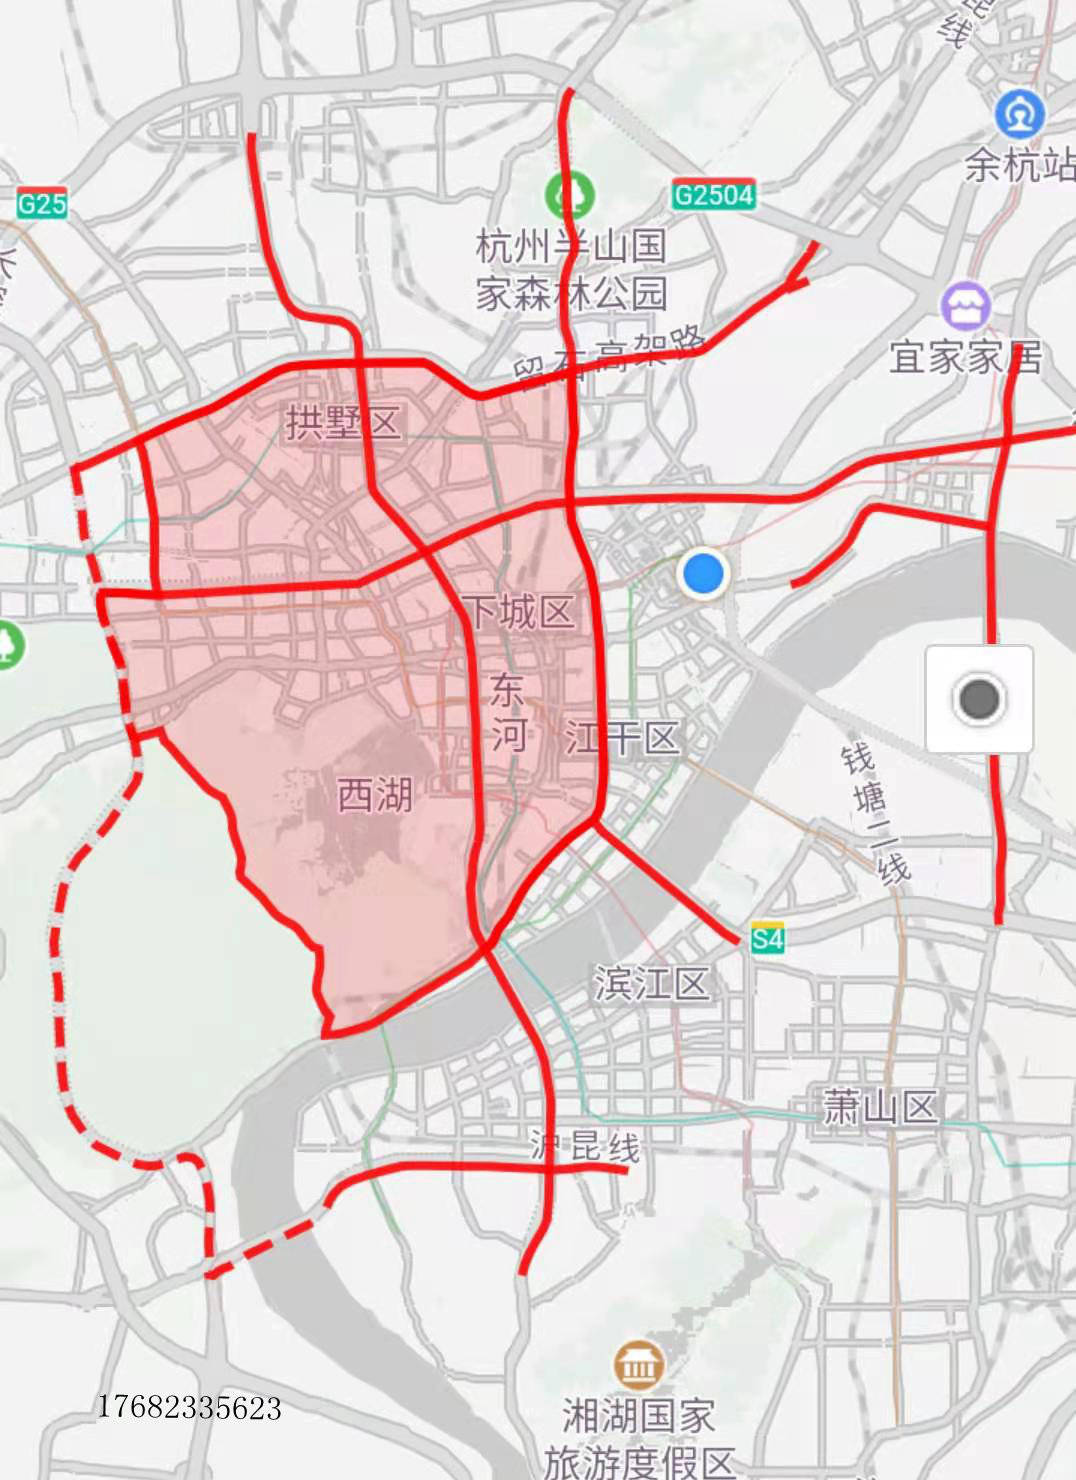 该时段您查询的车辆,红圈范围内及红色实线道路限行收起 限行范围